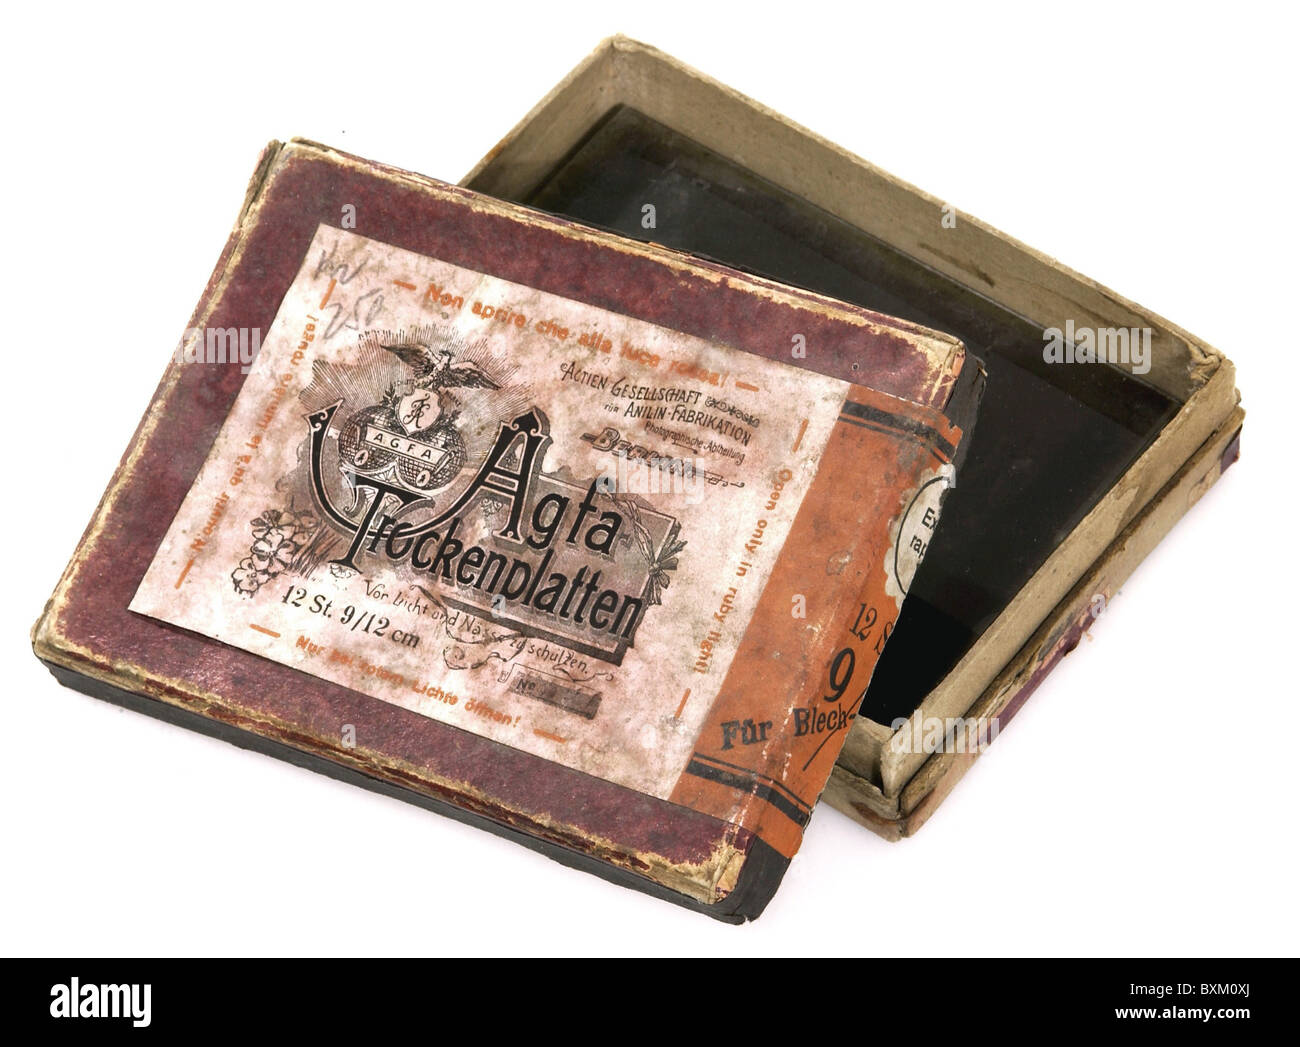 Fotografia, accessori, scatola con 12 negativi in vetro, formato 9 x 12 cm, Agfa, Berlino, Germania, circa 1899, diritti aggiuntivi-clearences-non disponibili Foto Stock